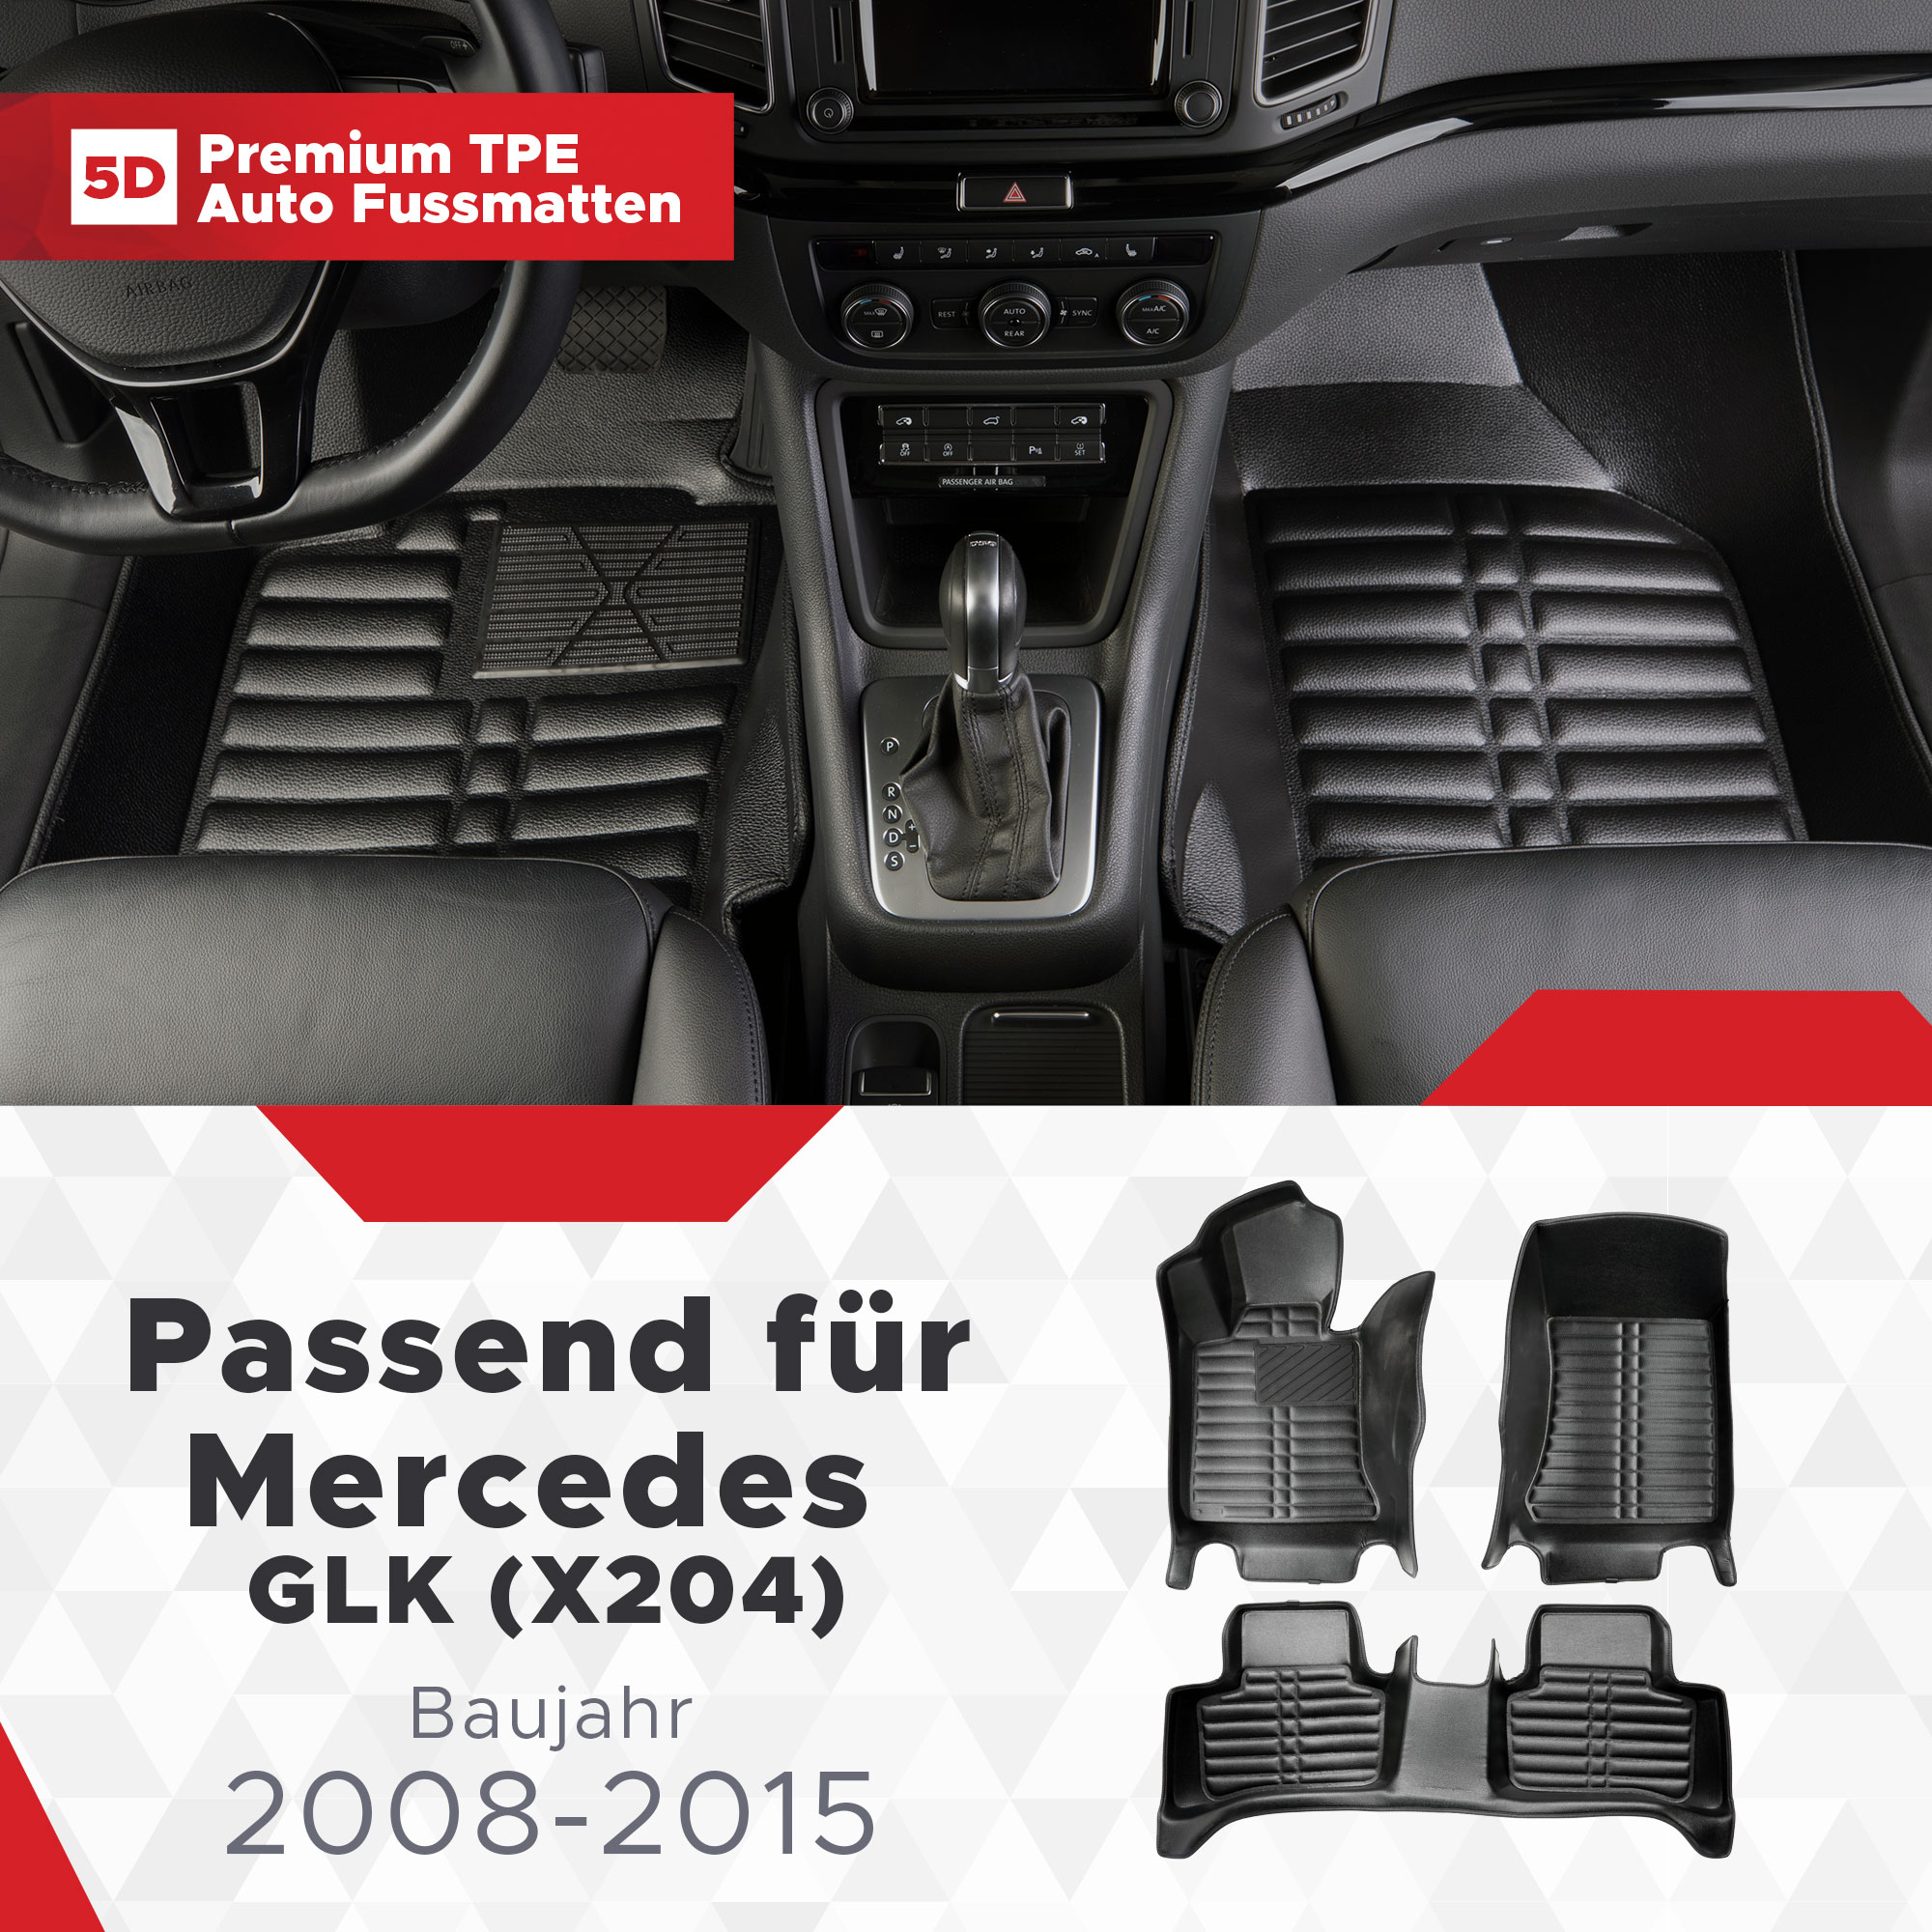 Fussmatten TPE GLK Bj Mercedes (X204) 2008-2015 5D